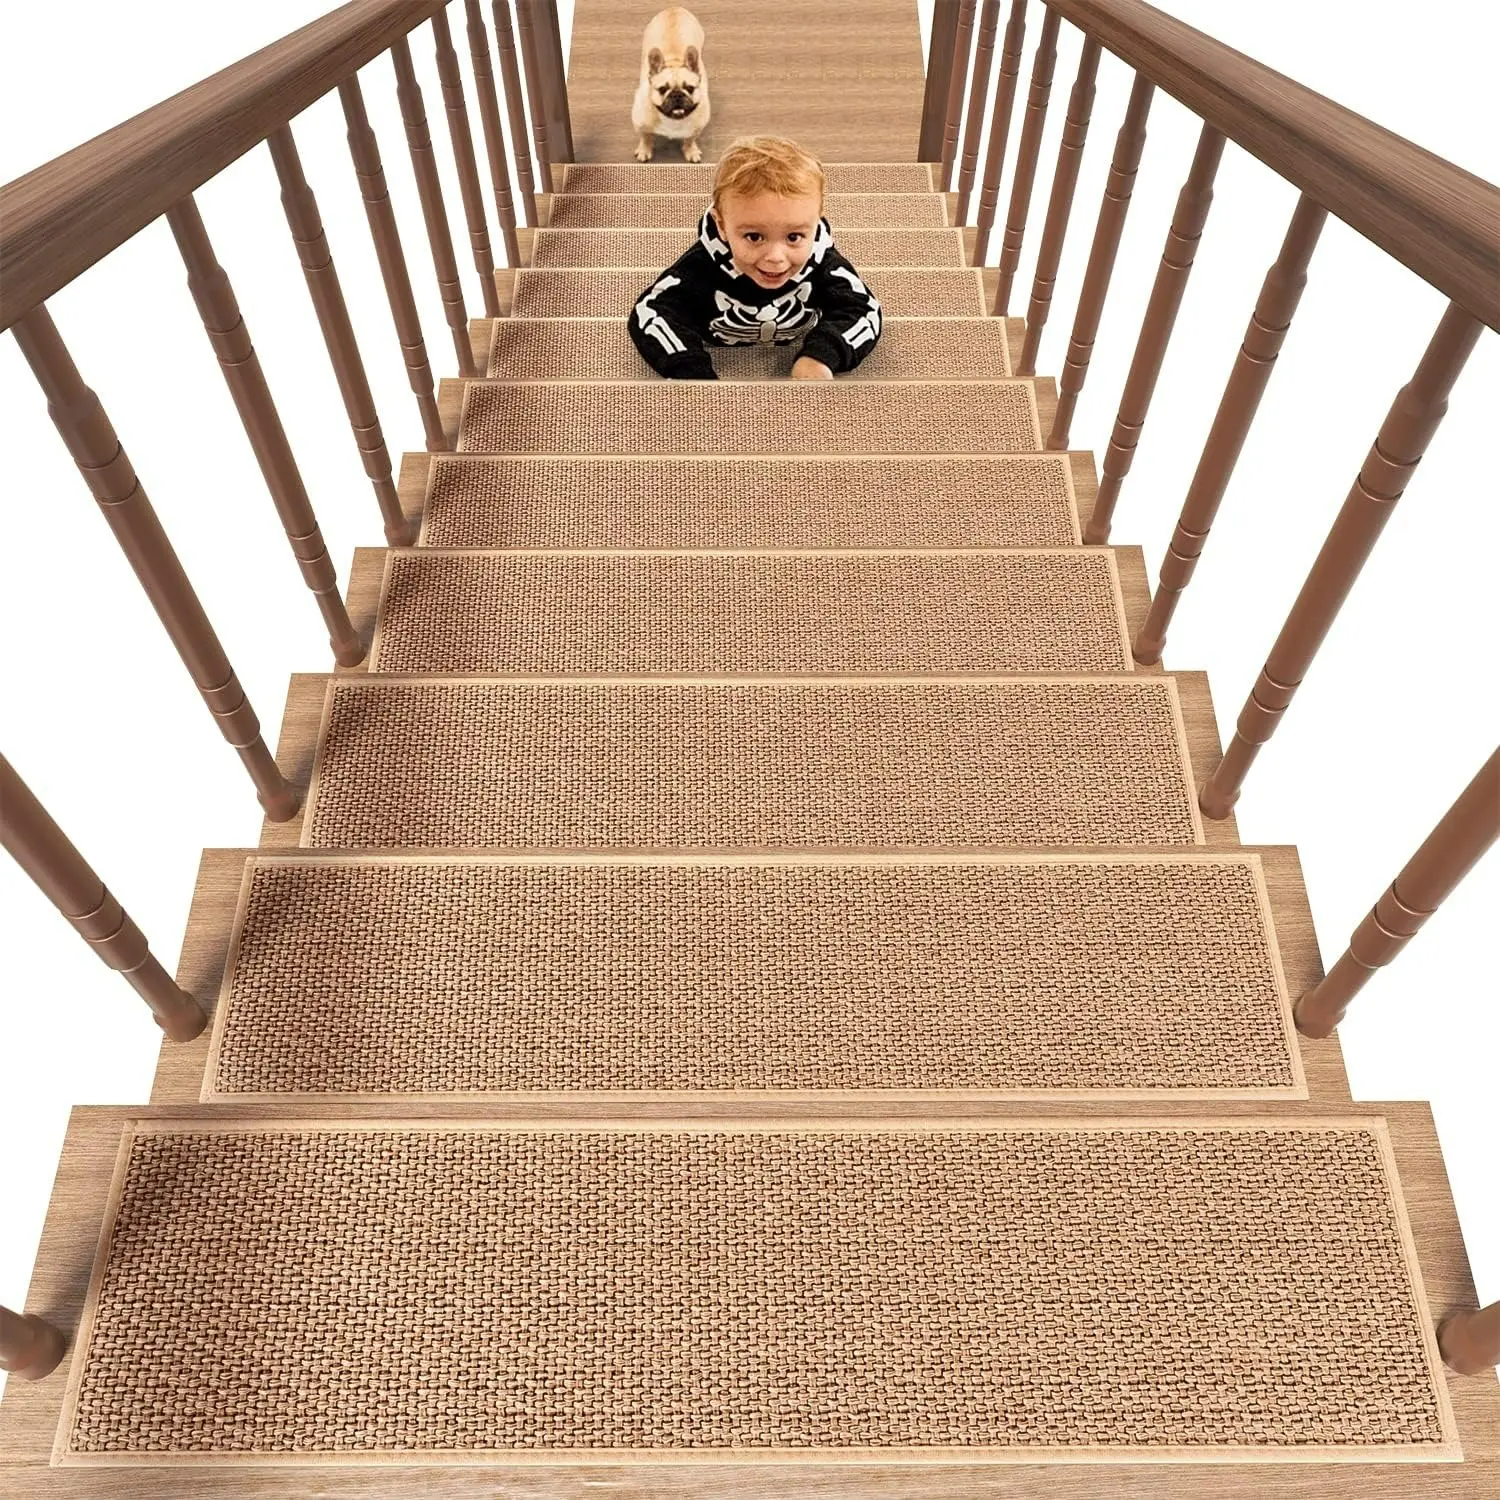 उच्च गुणवत्ता वाली नॉन-स्लिप सीढ़ी ट्रेड्स मैट इनडोर रबर सीढ़ियाँ ट्रेड्स कालीन सीढ़ियाँ स्टेप मैट